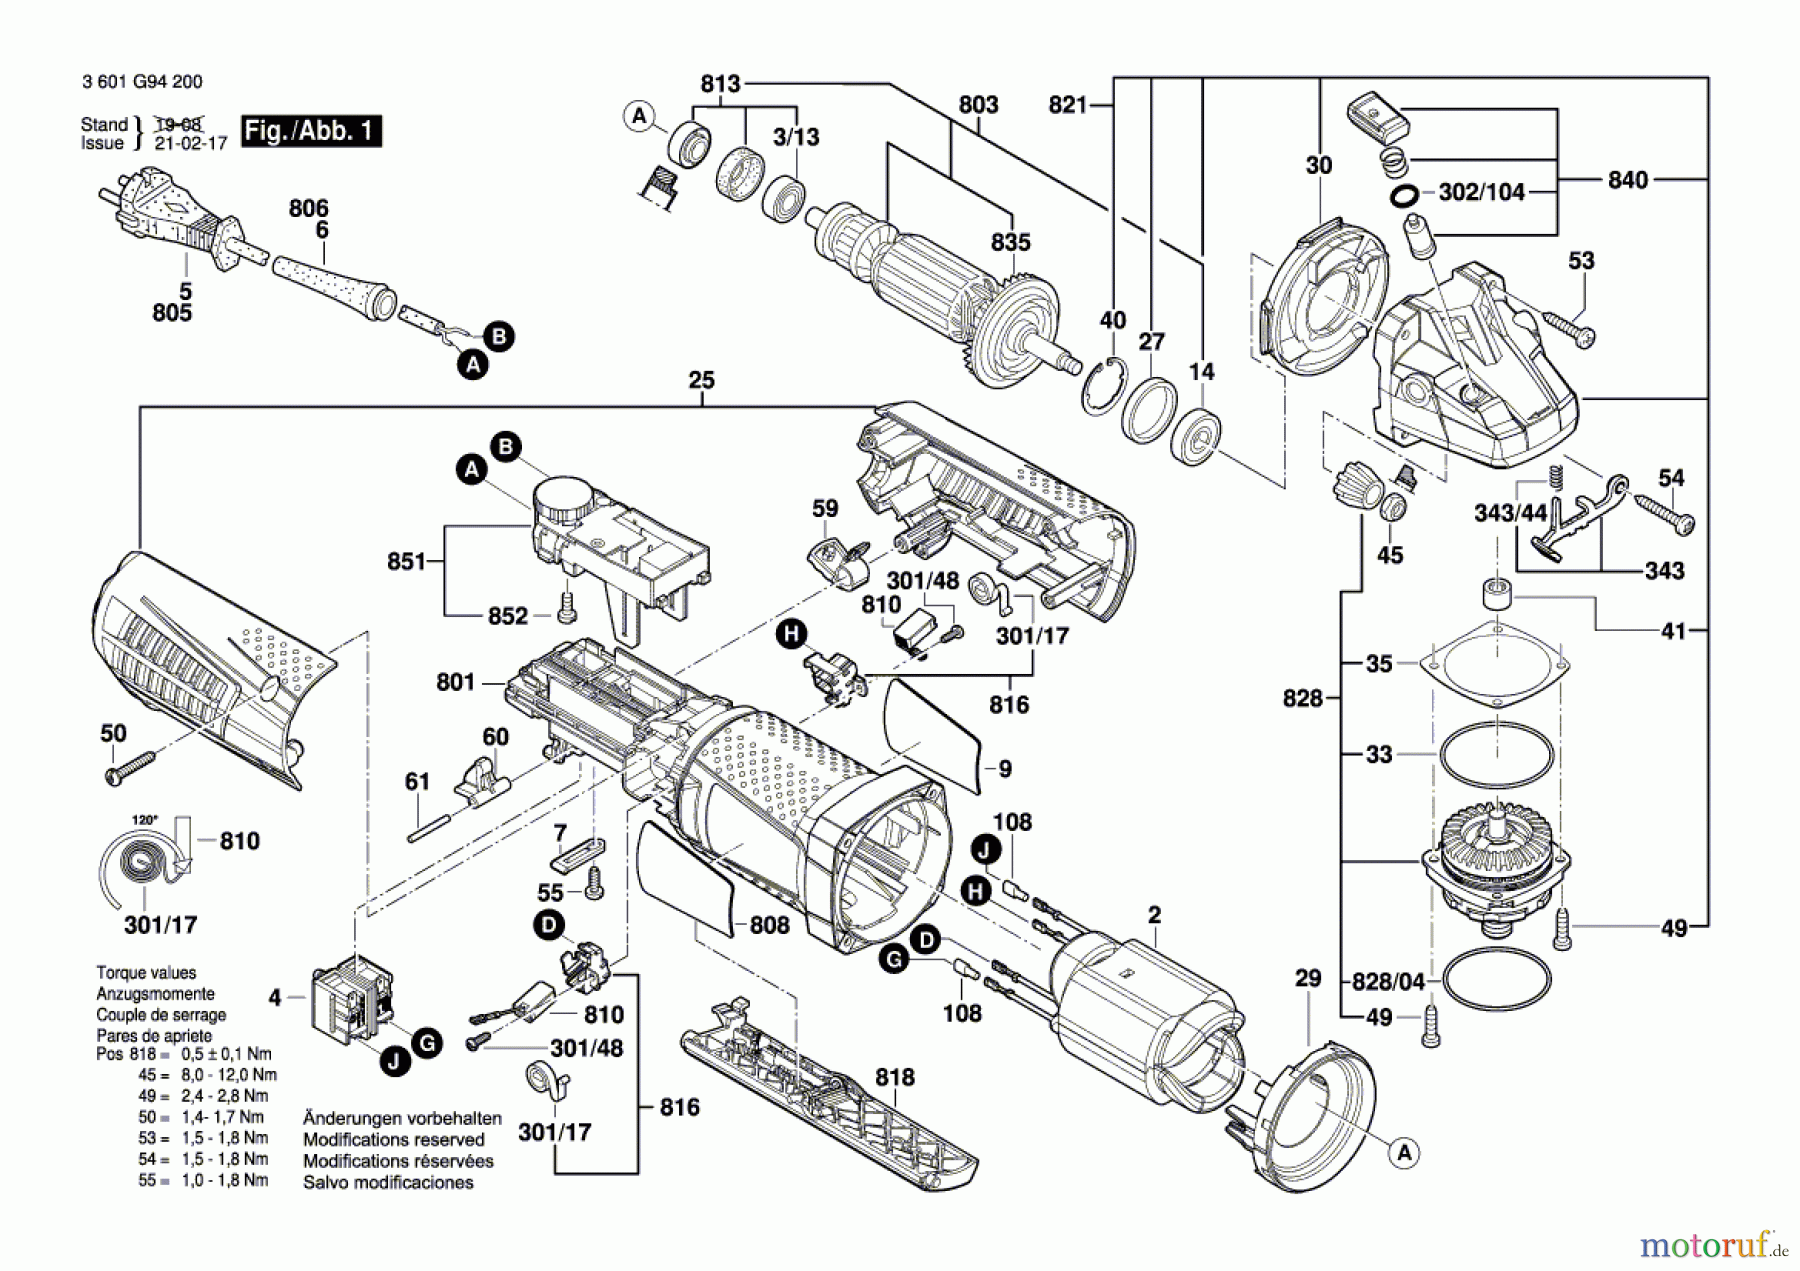  Bosch Werkzeug Winkelschleifer GWS 12-125 CIEP Seite 1